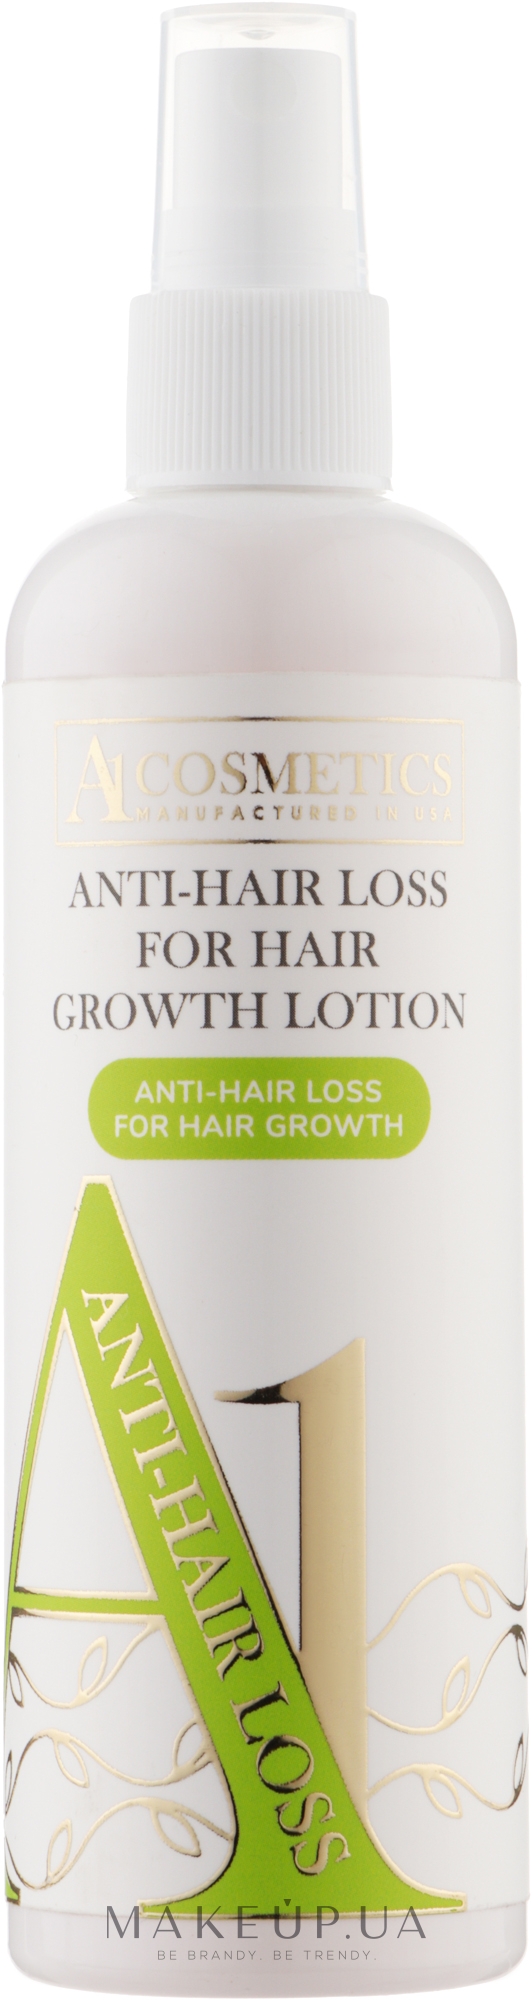 Лосьйон проти випадання й для росту волосся - A1 Cosmetics Anti-Hair Loss For Hair Growth Lotion — фото 150ml